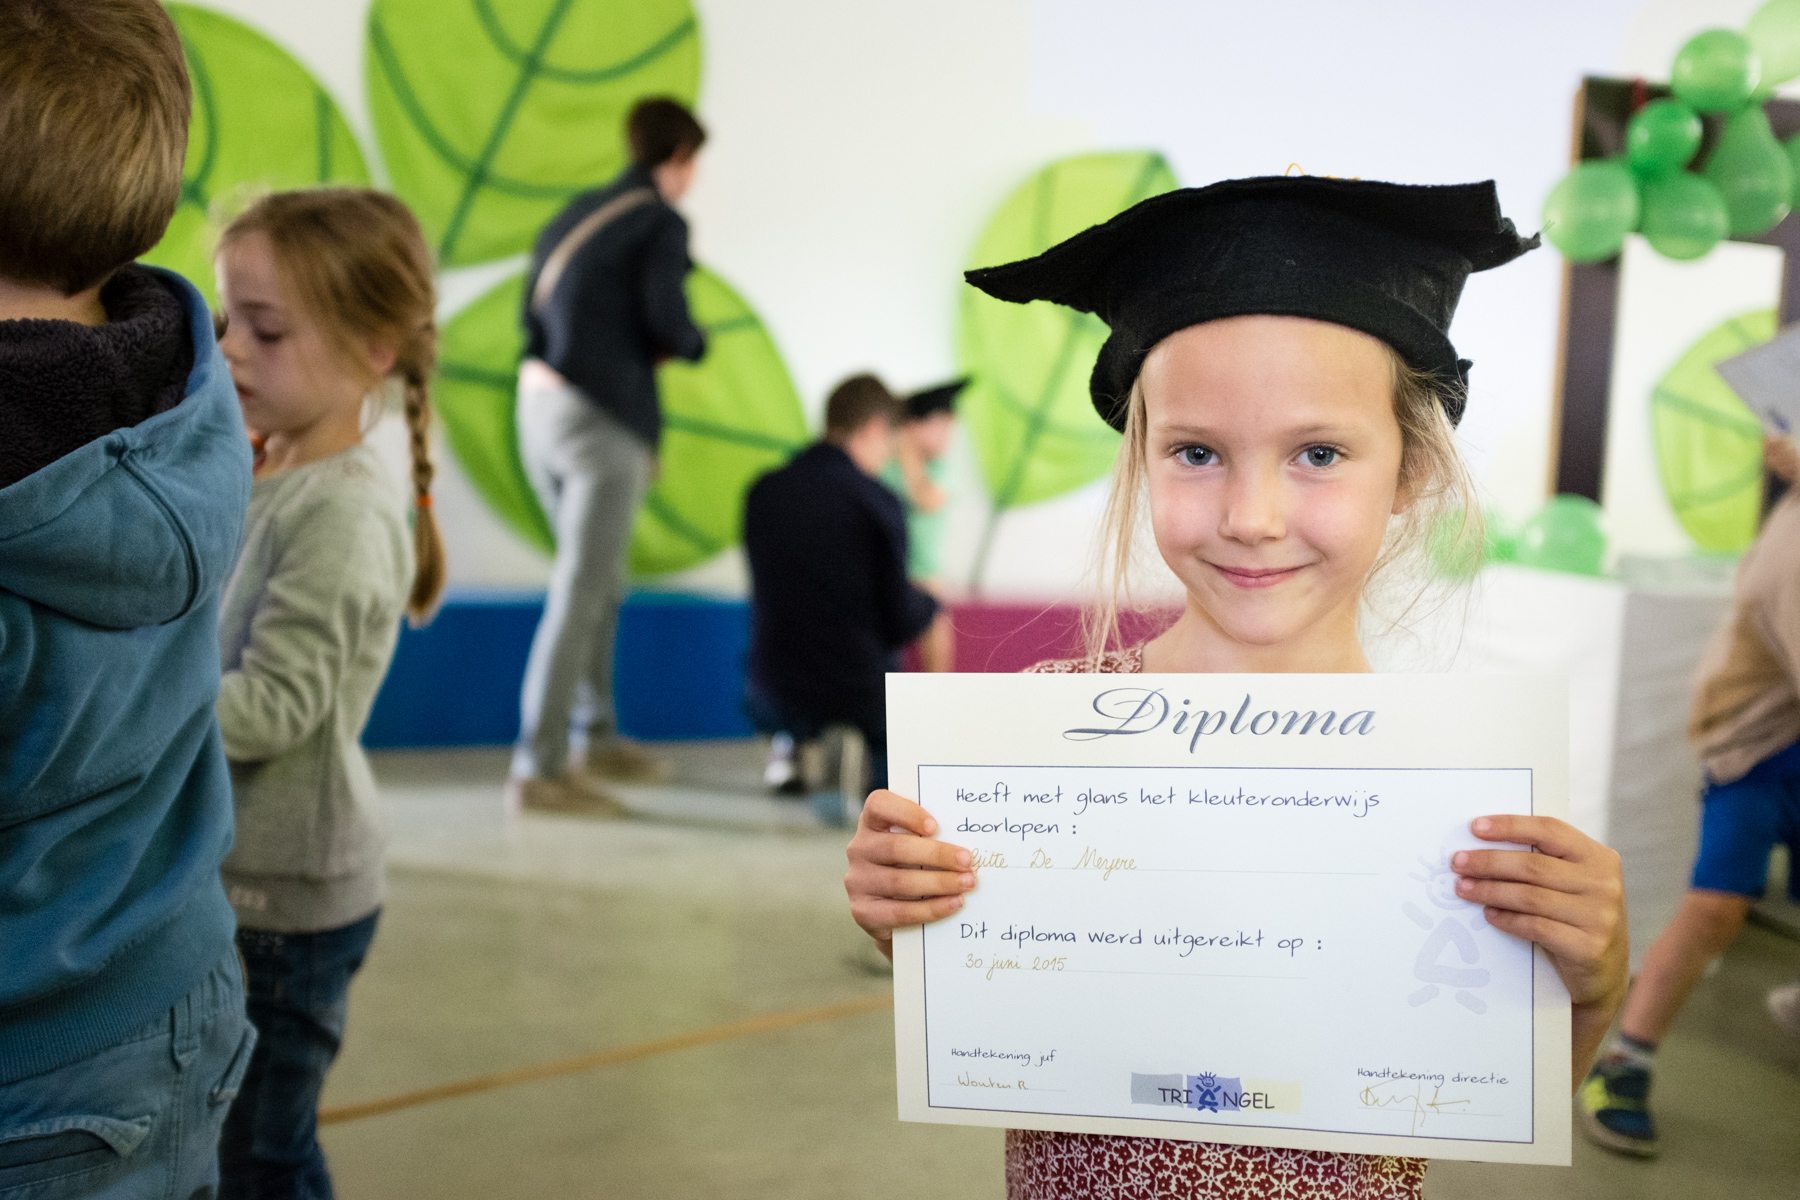 Gitte toont fier haar diploma.